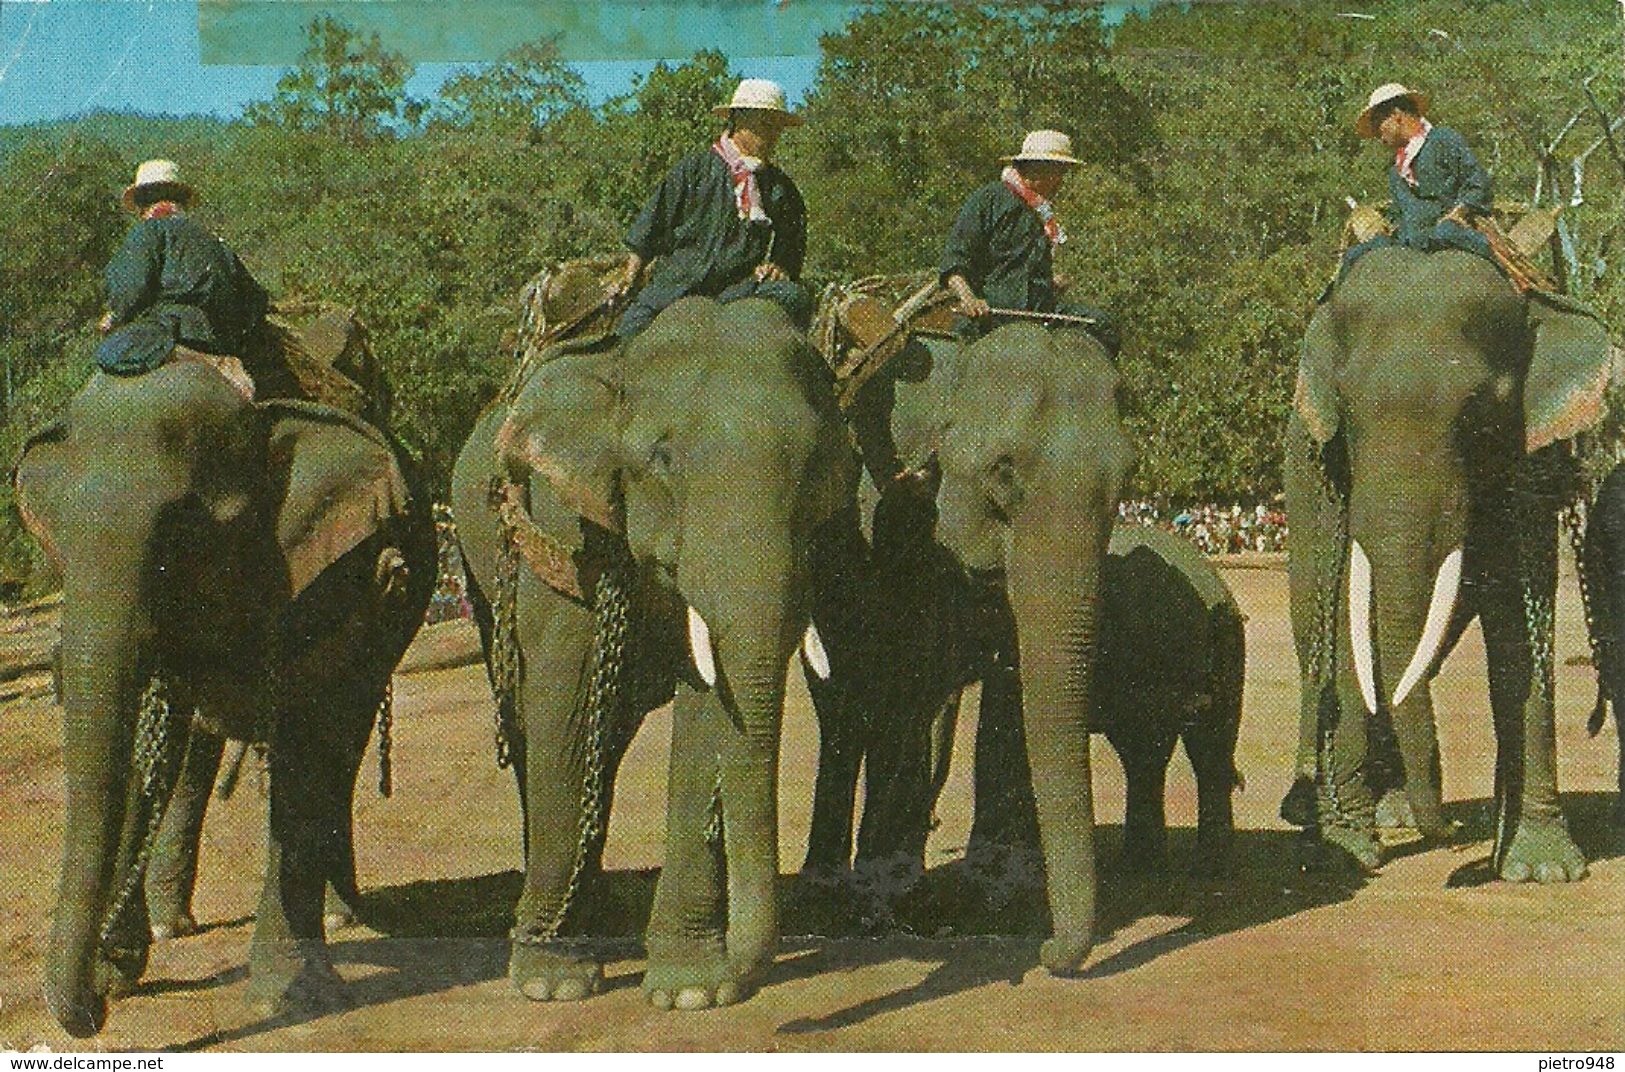 Thailandia (Thailand) Elefanti, Elephants Preparing For A Parade - Thaïland